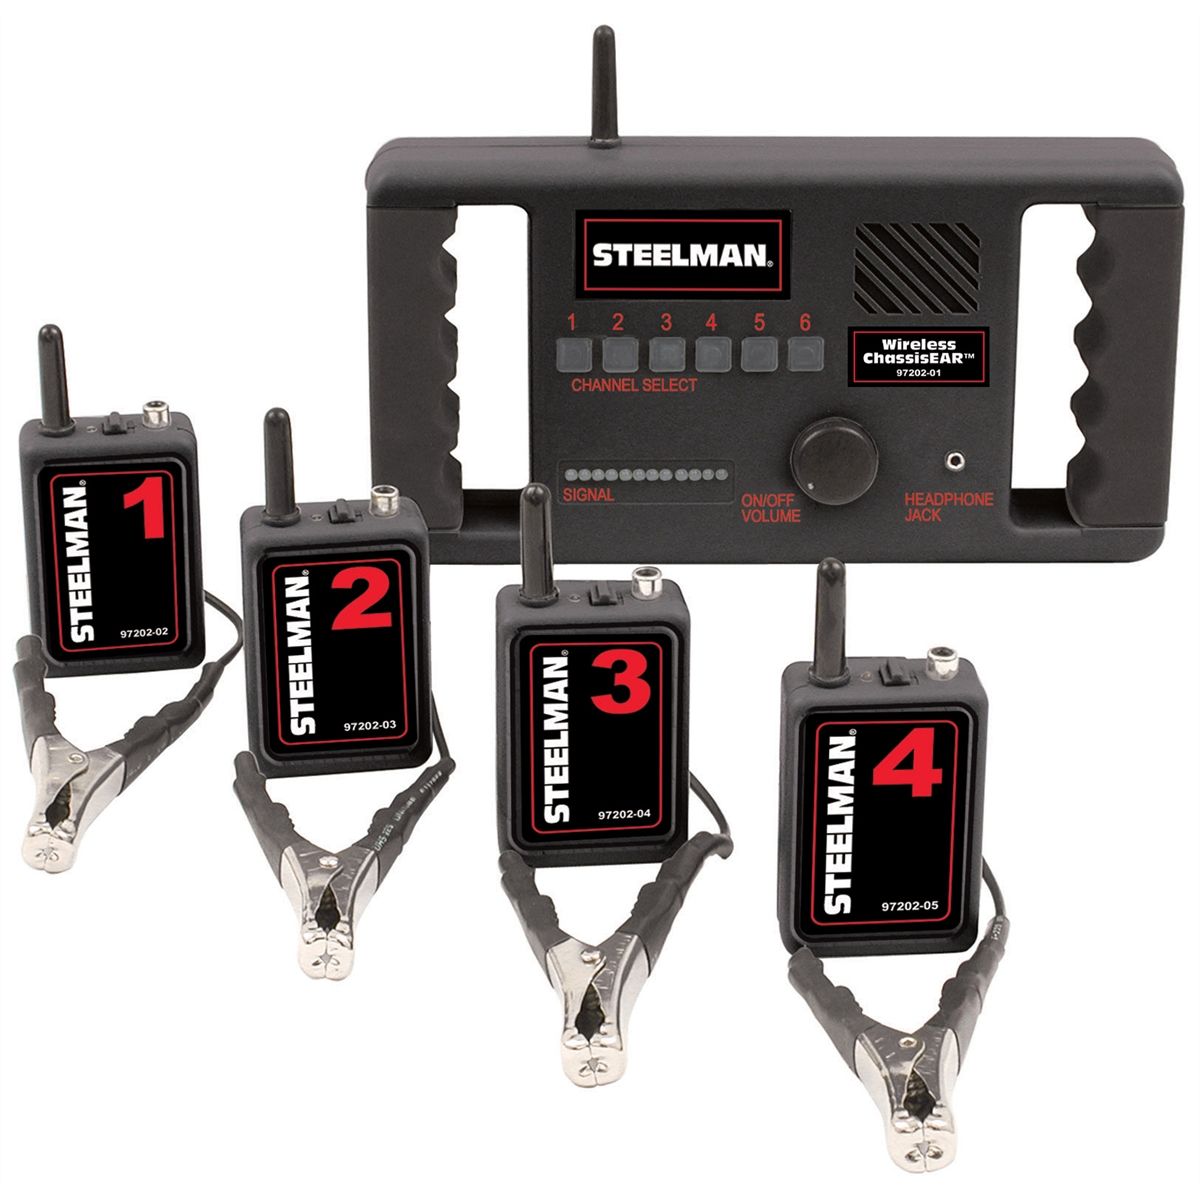 Funksender Nr.1 für Wireless Chassis-Ear Stethoskop Steelman 